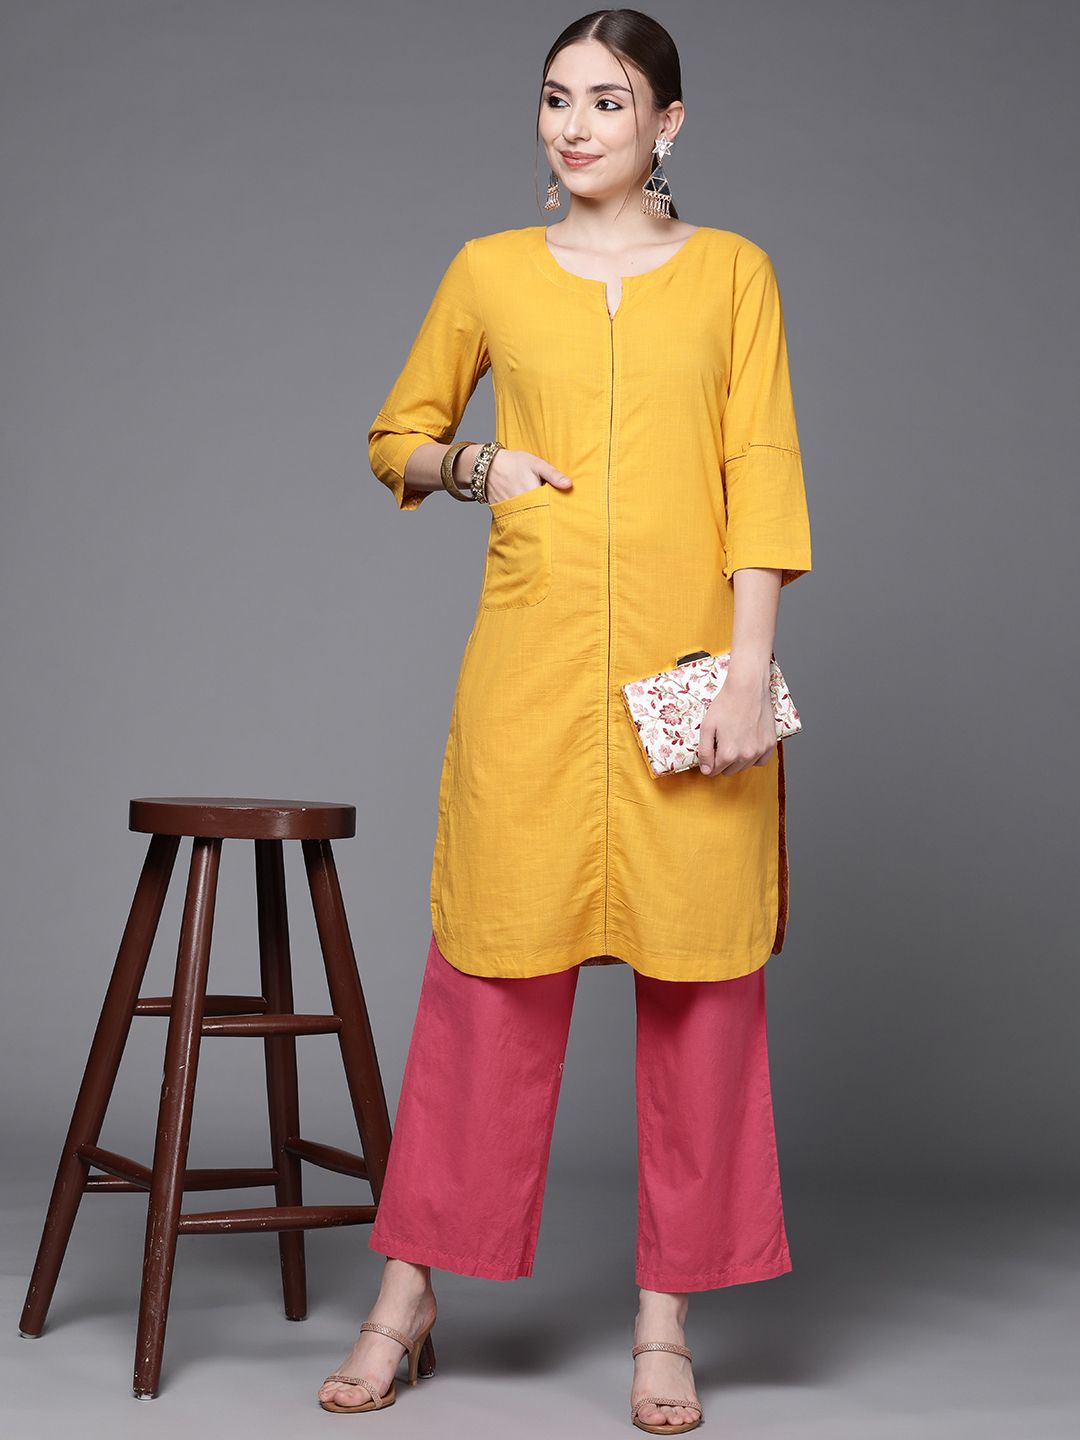 Fabindia Women Mustard Yellow Pure Cotton Straight Knee Length Kurta Price in India